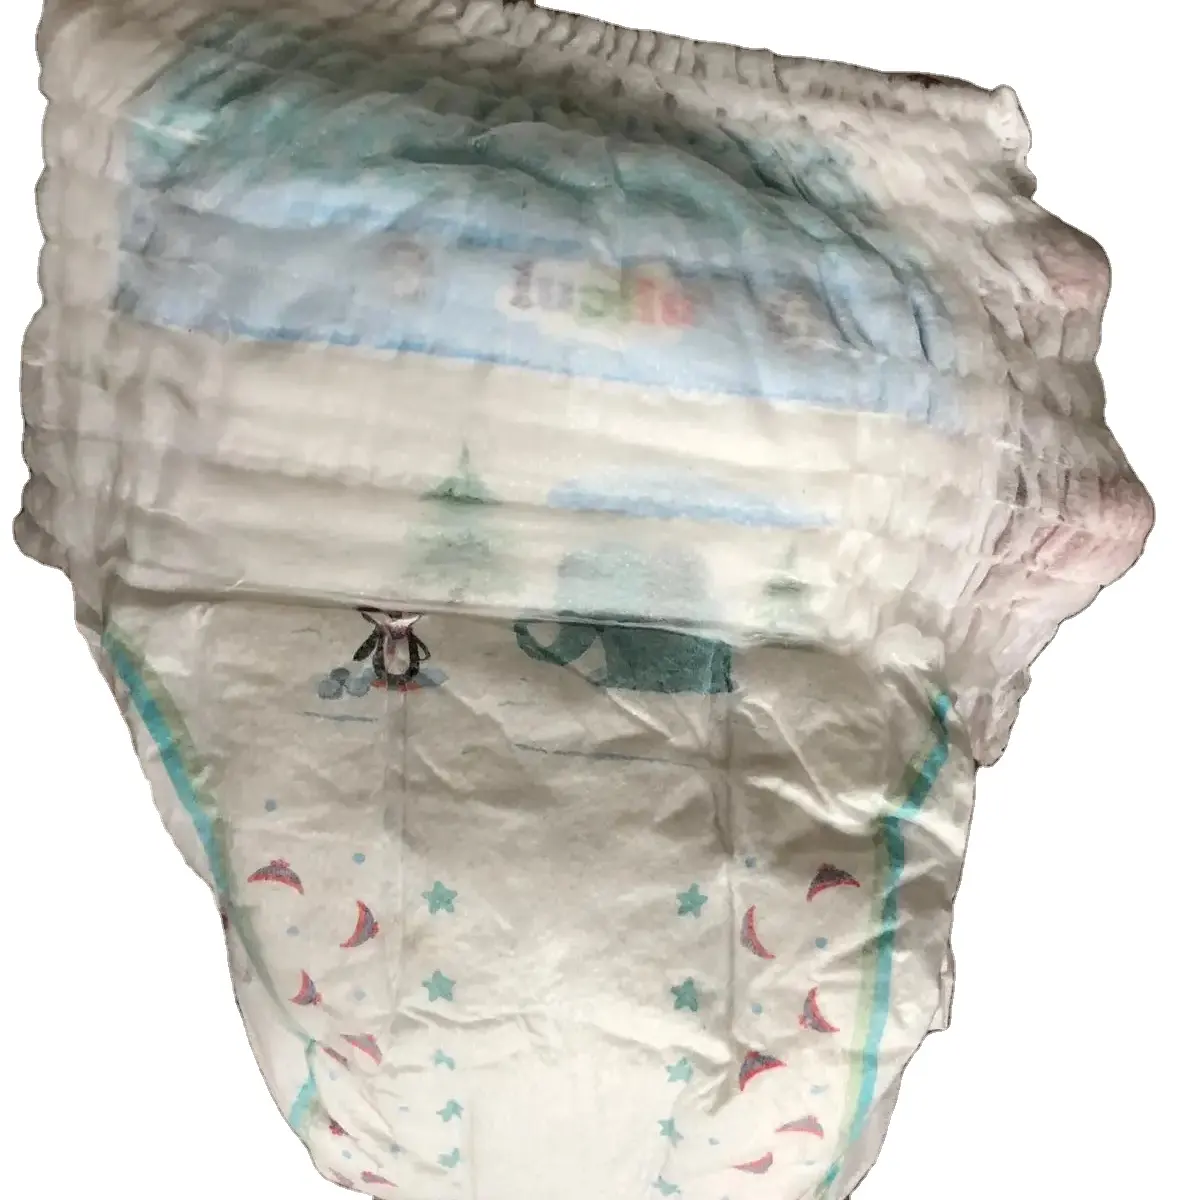 Lup celana bayi LUPILU dari pabrik DRYLOCK Republik Ceko, penyerap TERBAIK kualitas Eropa, elastis penuh